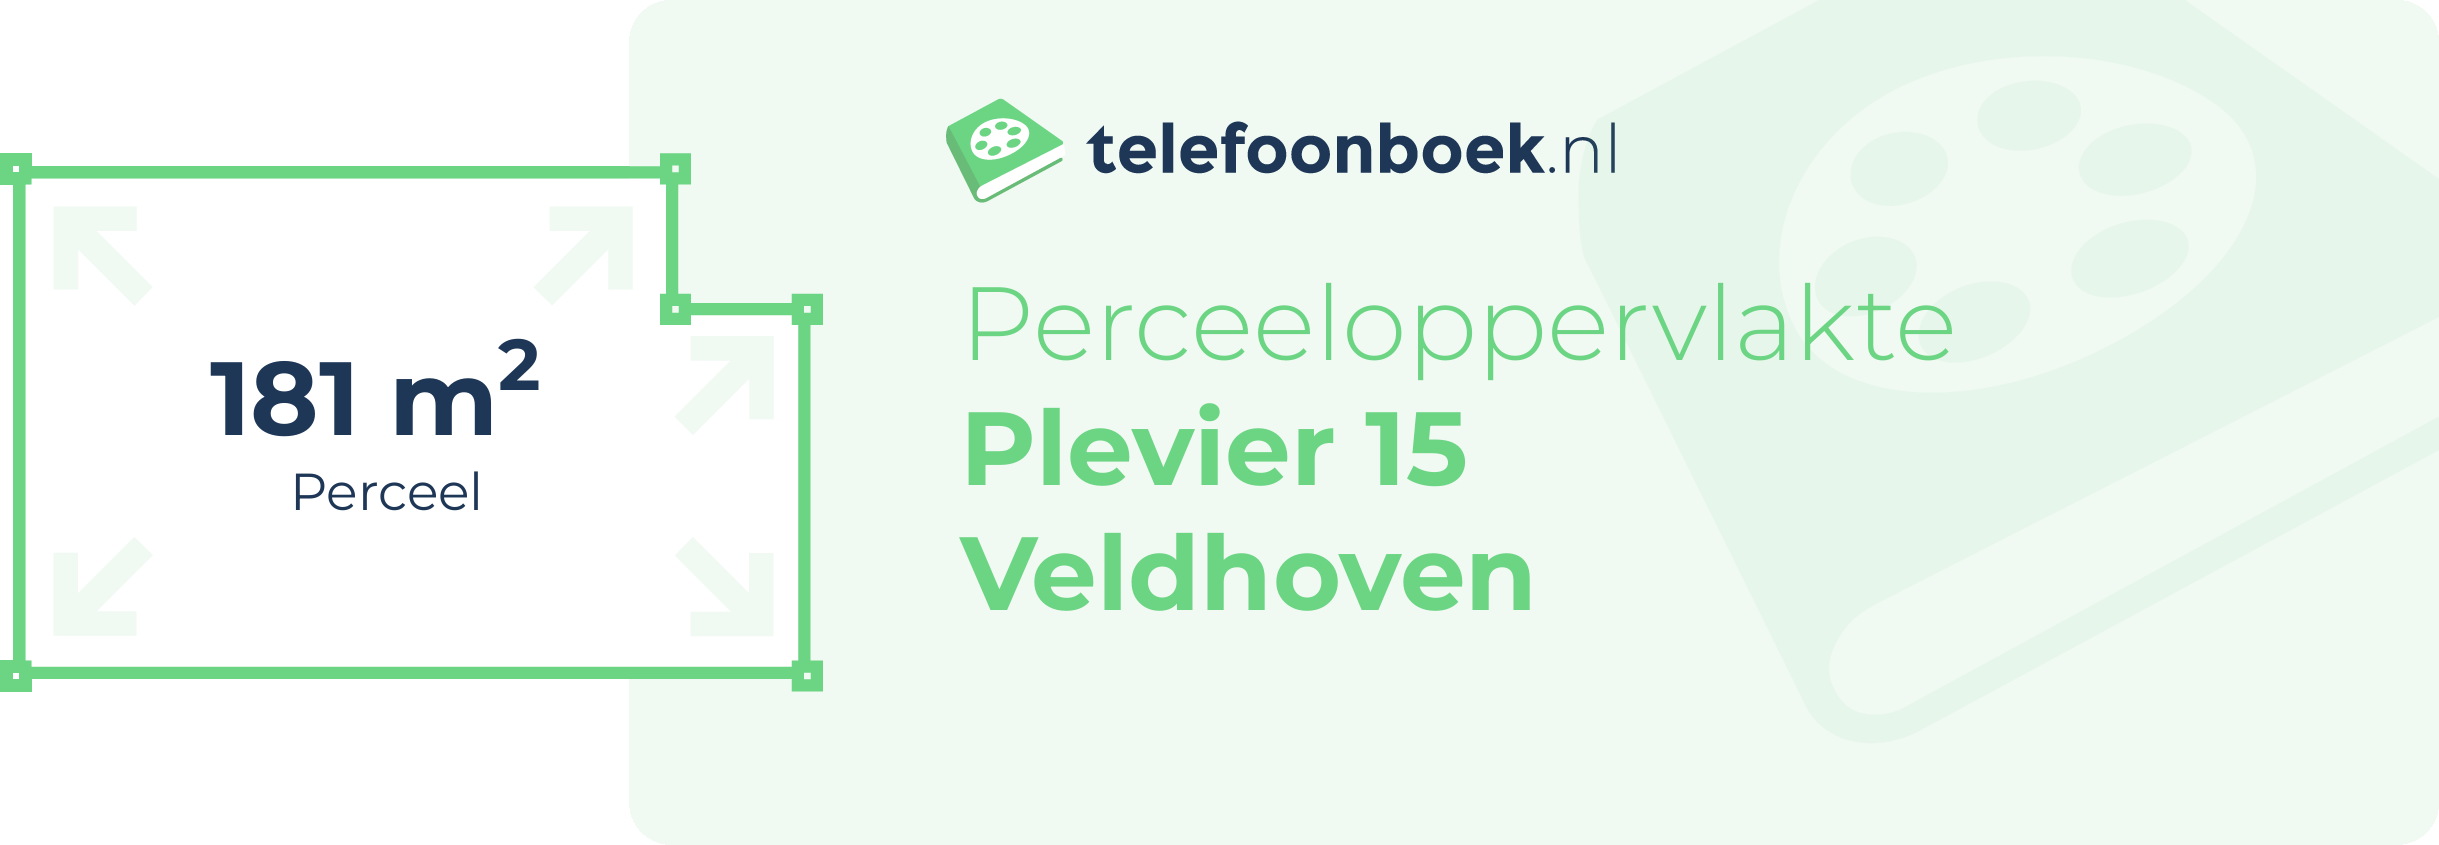 Perceeloppervlakte Plevier 15 Veldhoven